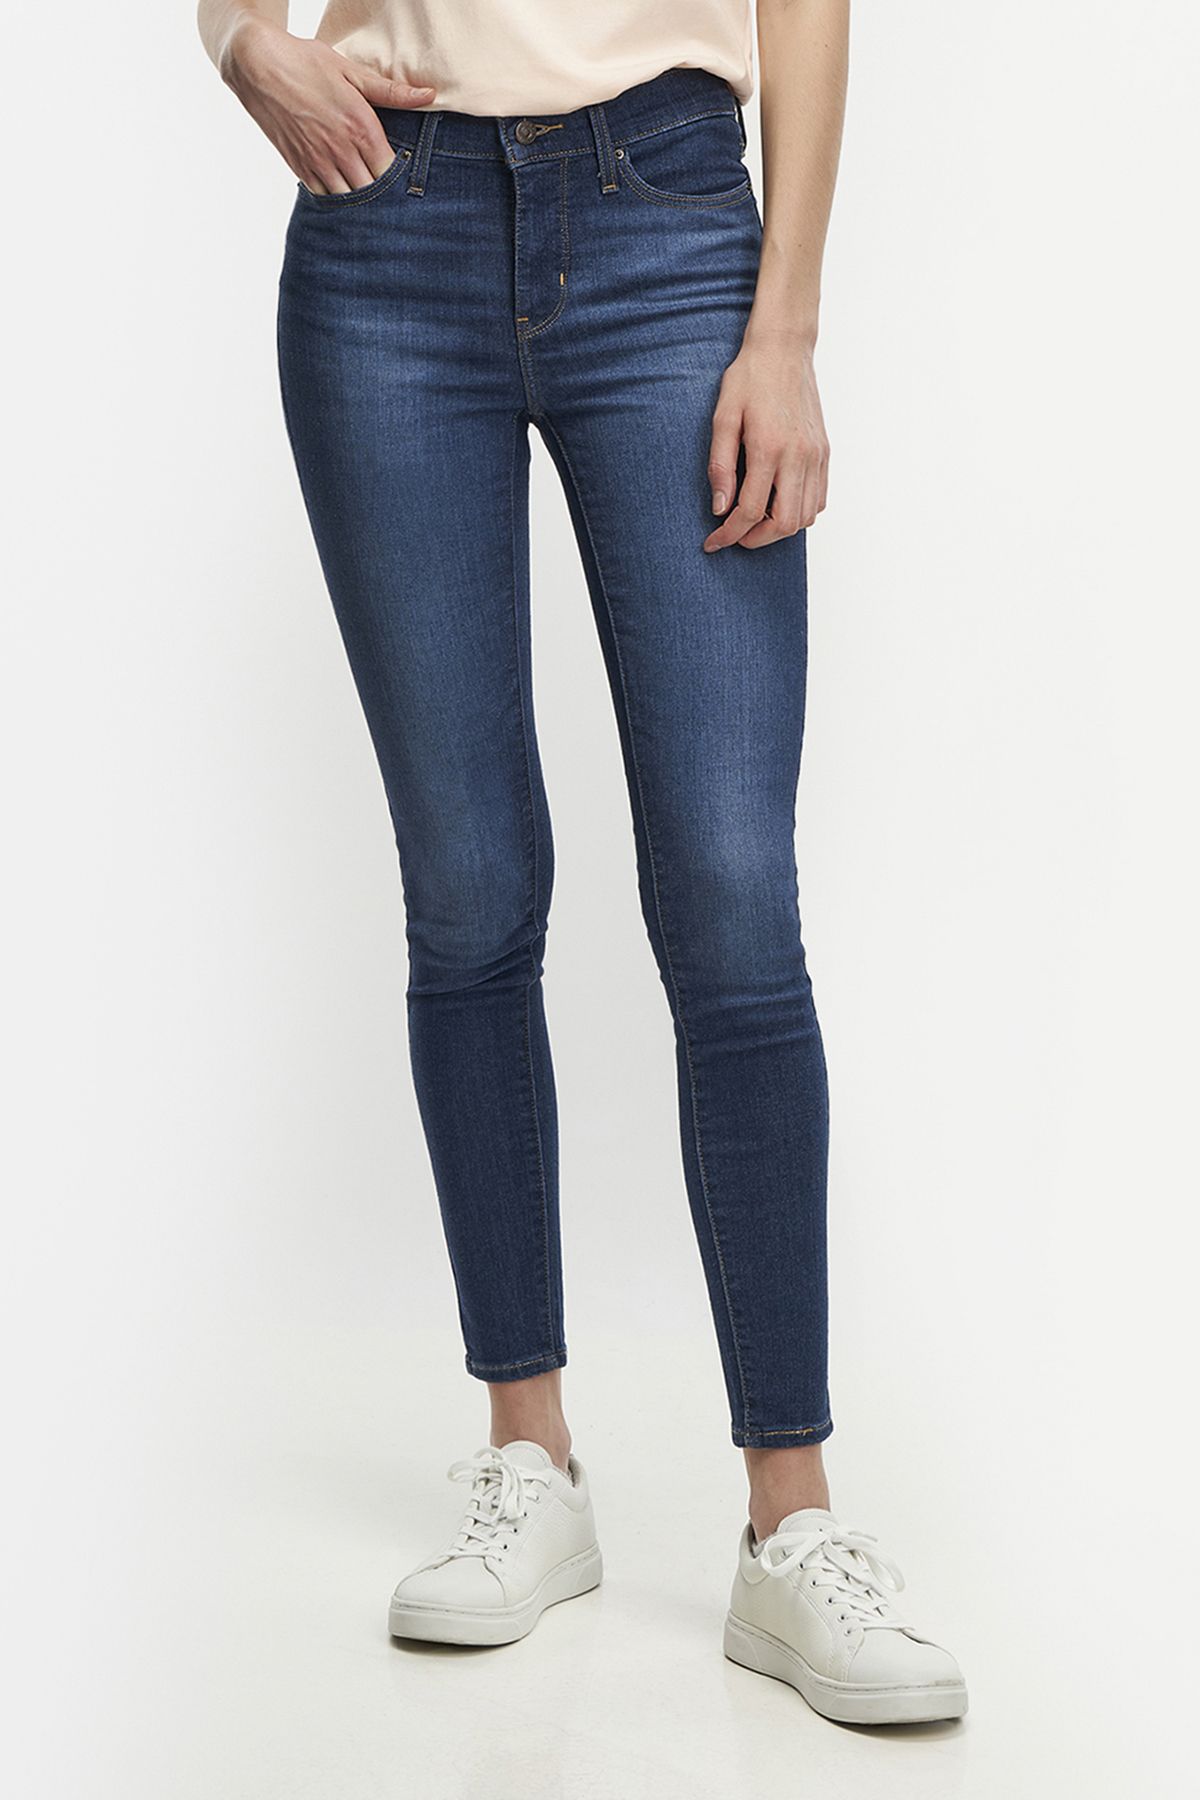 Levi's Â® 310 Super Toronto Women Jeans